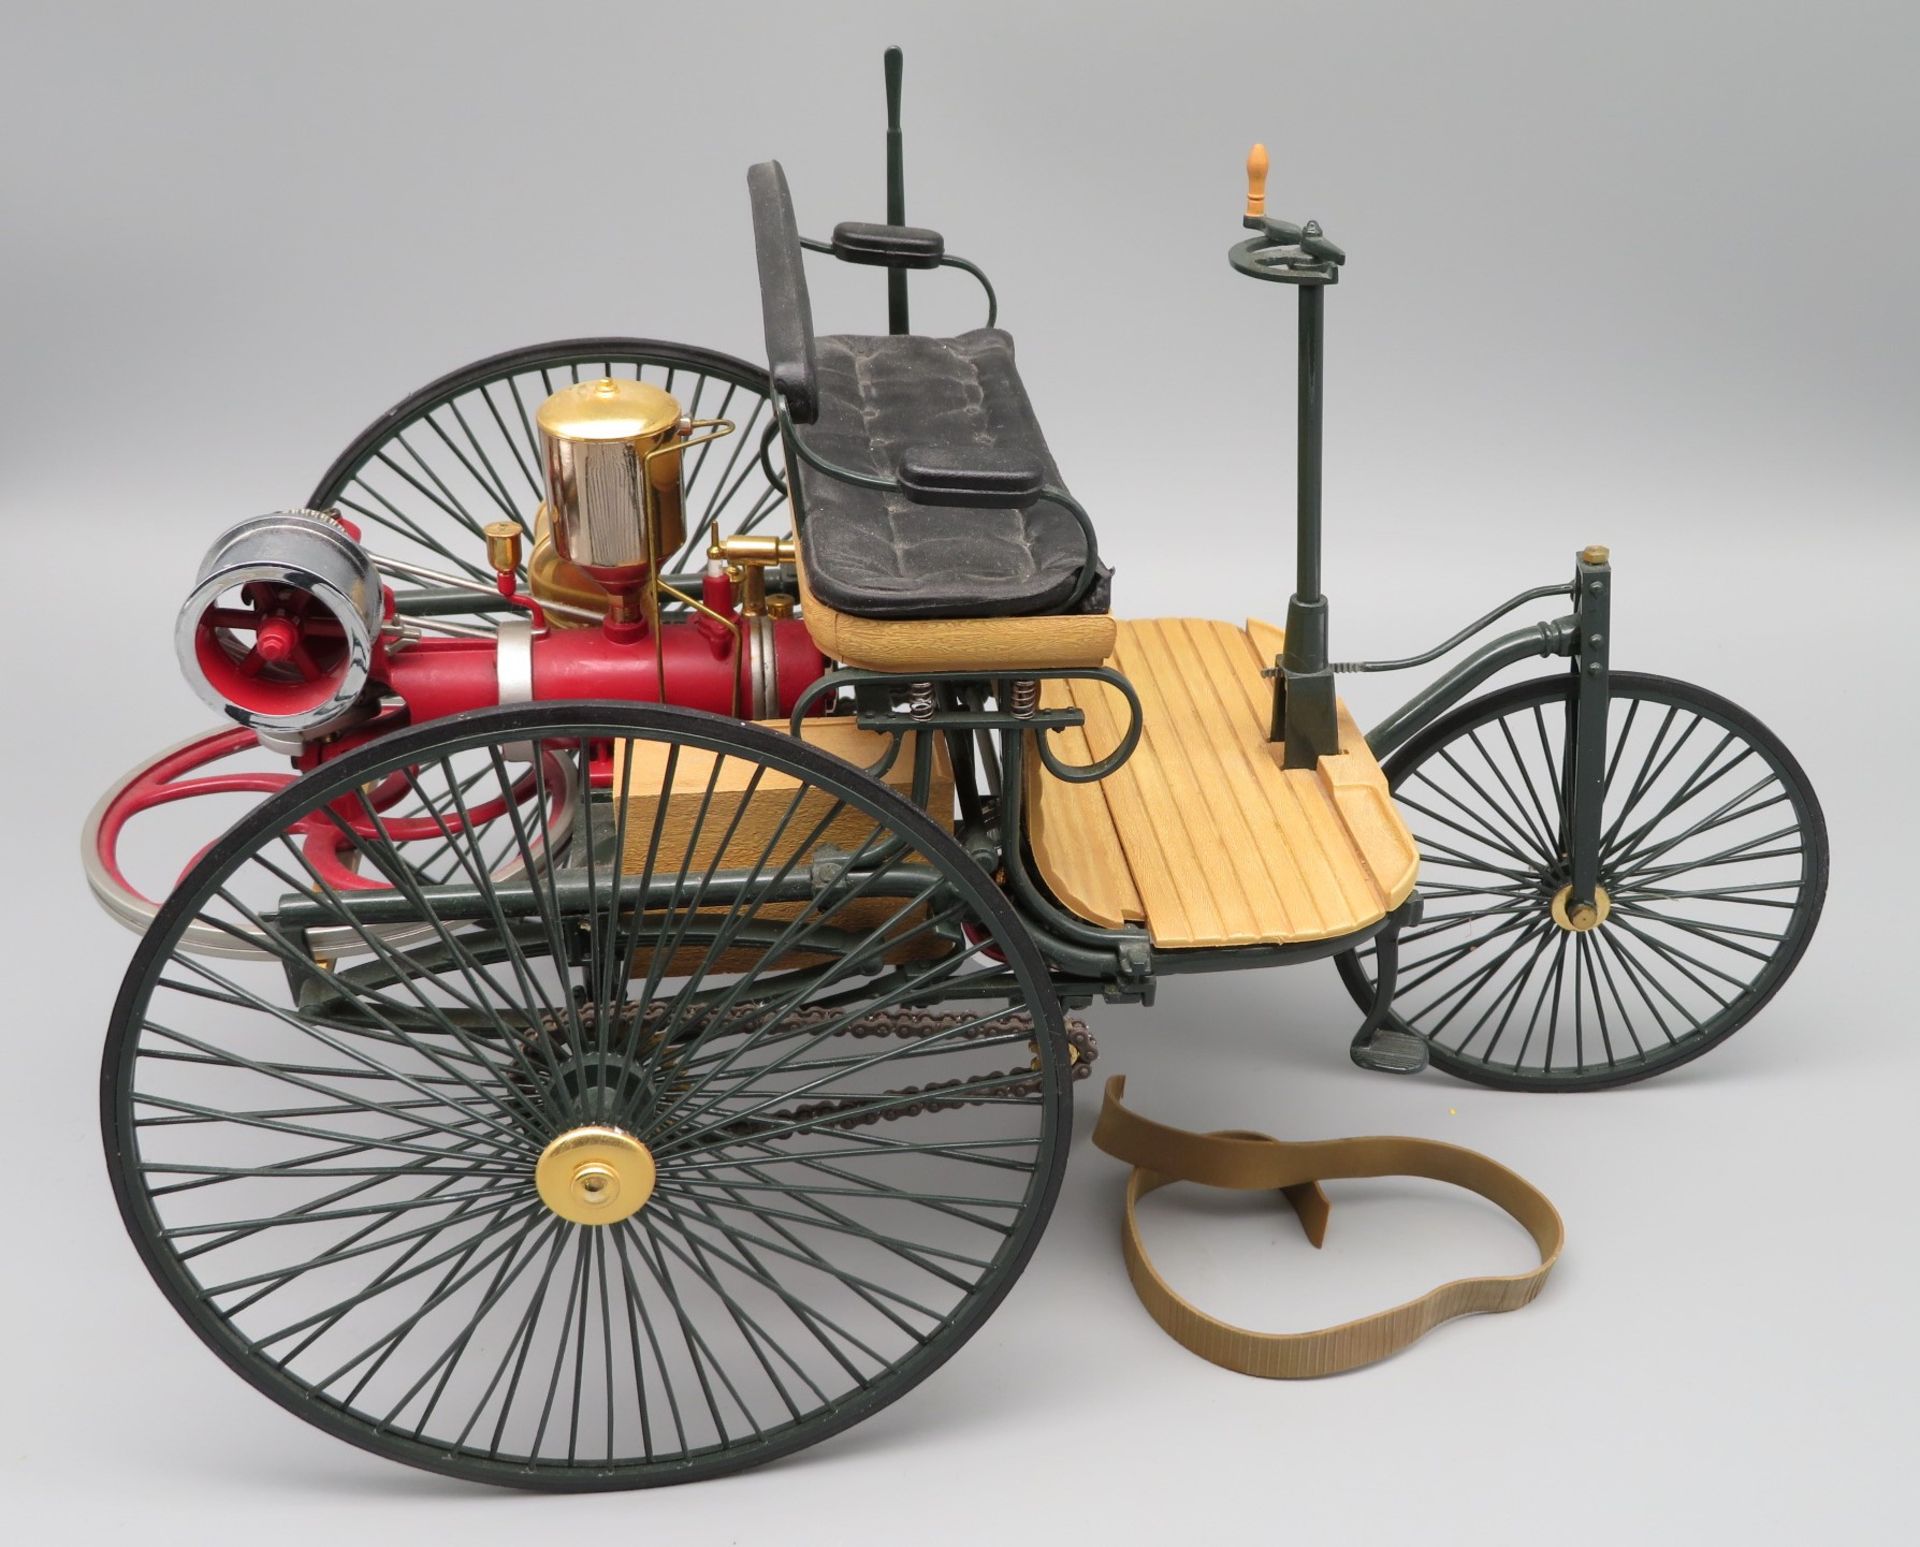 Automobil-Modell des Patent-Motorwagens der Bertha Benz, Gummi gerissen, 18 x 30 x 16 cm.